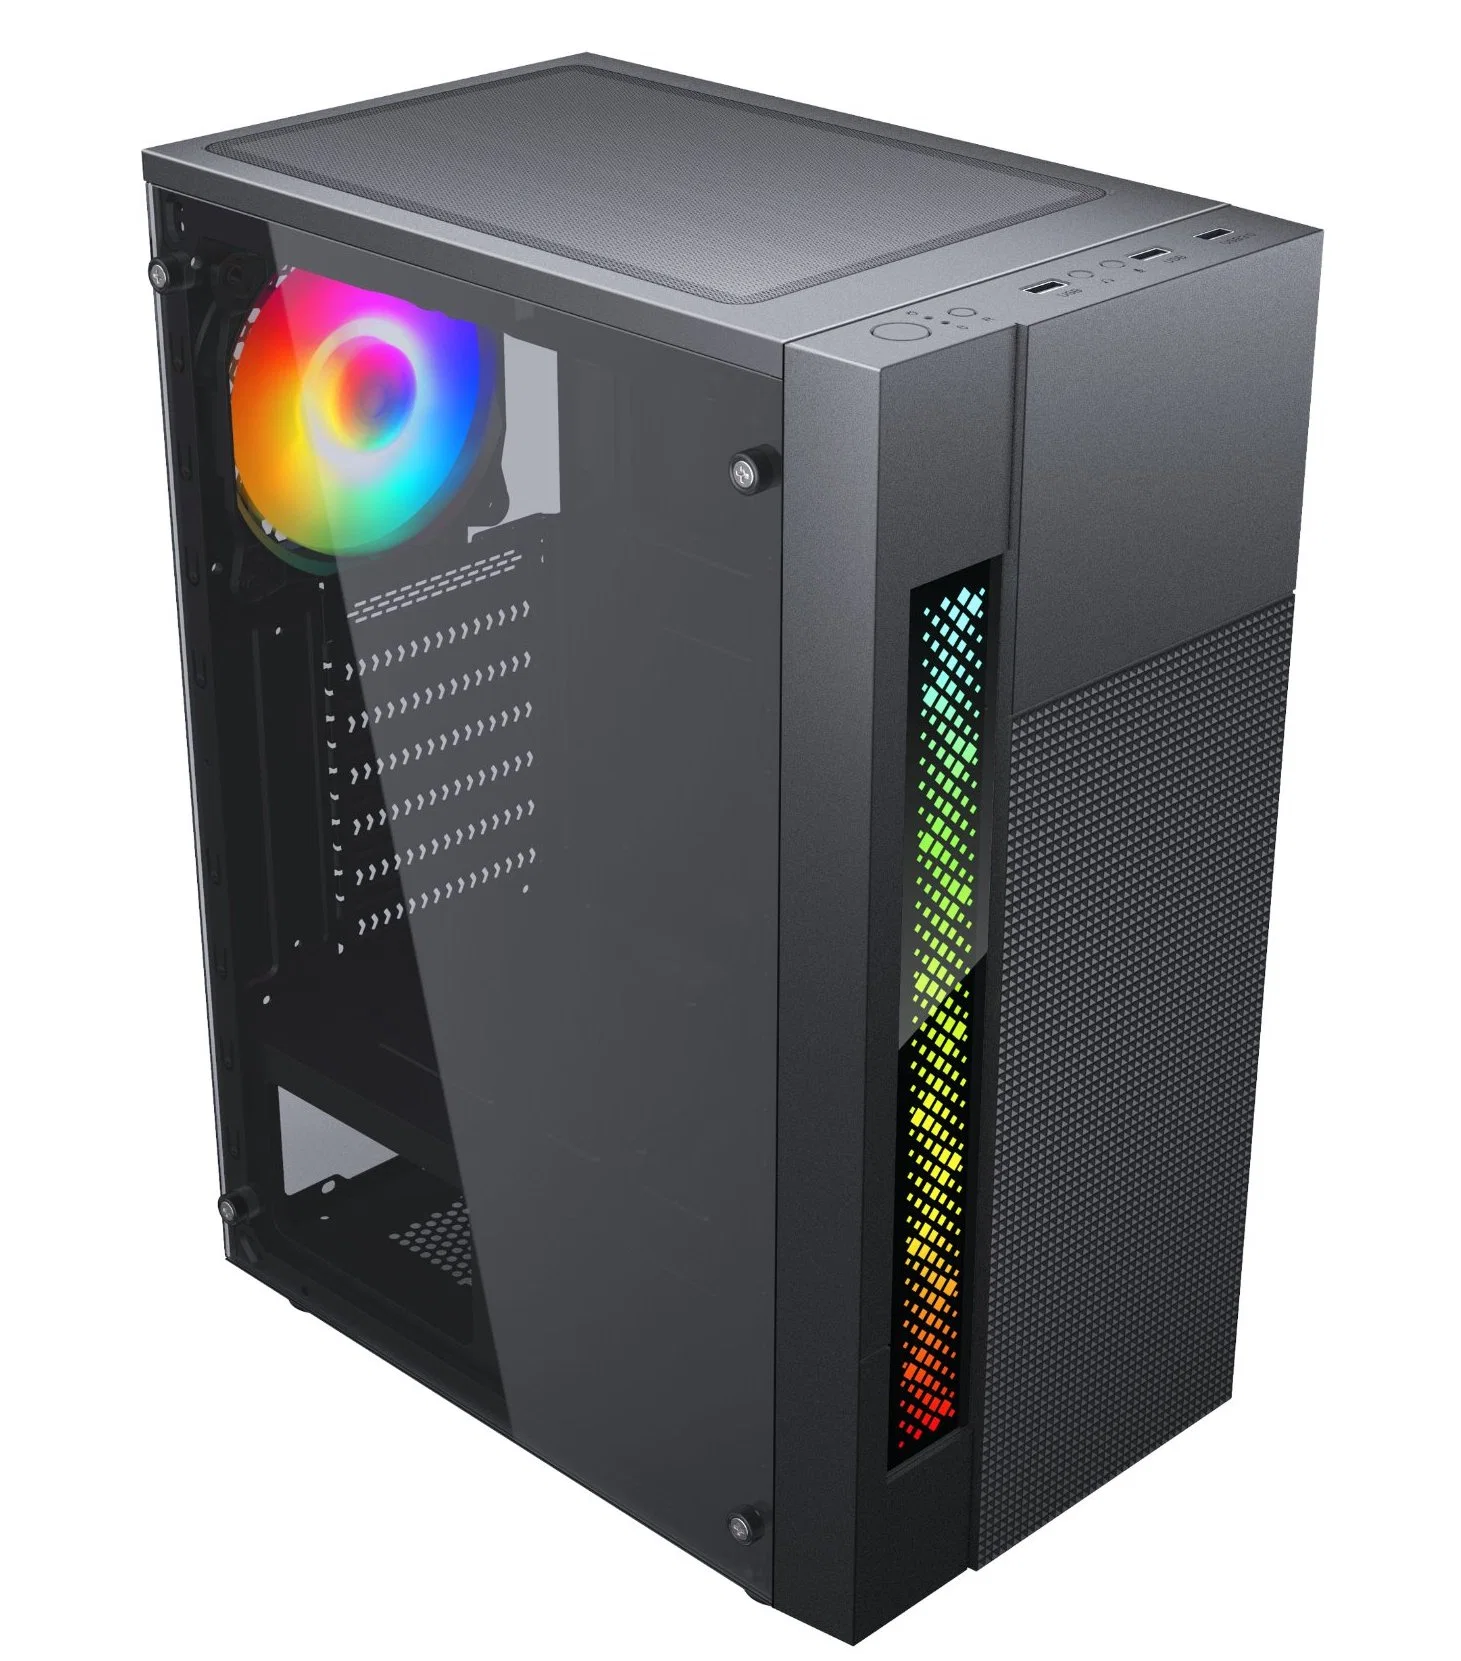 Equipo personalizado de los casos de los casos de juegos de ordenador PC con TIRA DE LEDS